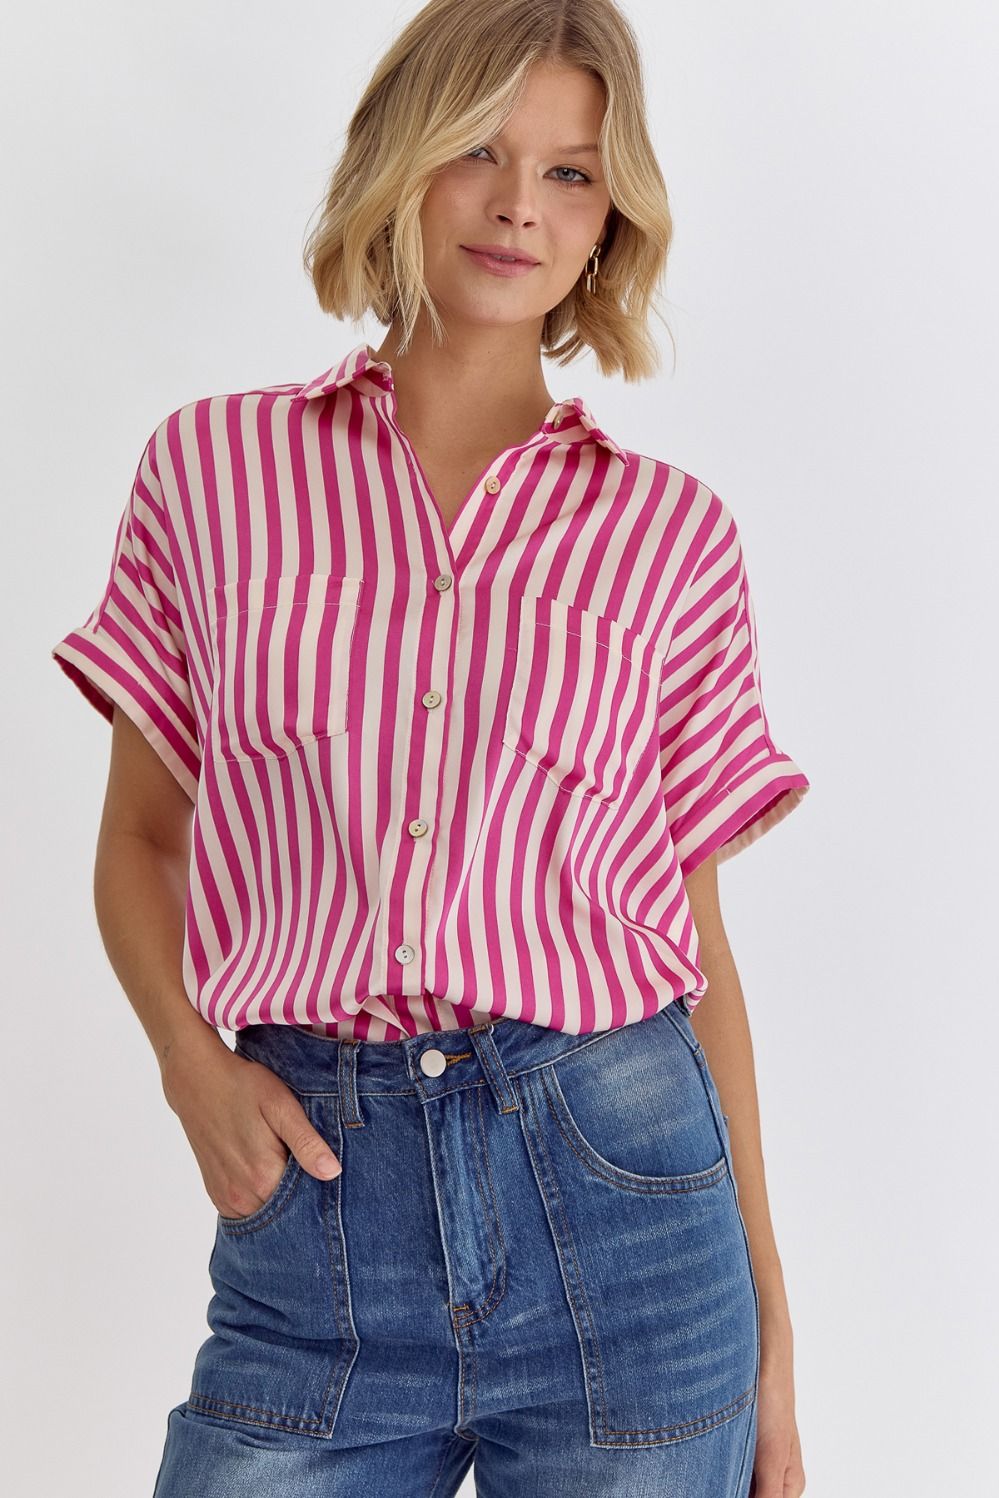 Striped Button Up Blouse - Pink-K. Ellis Boutique